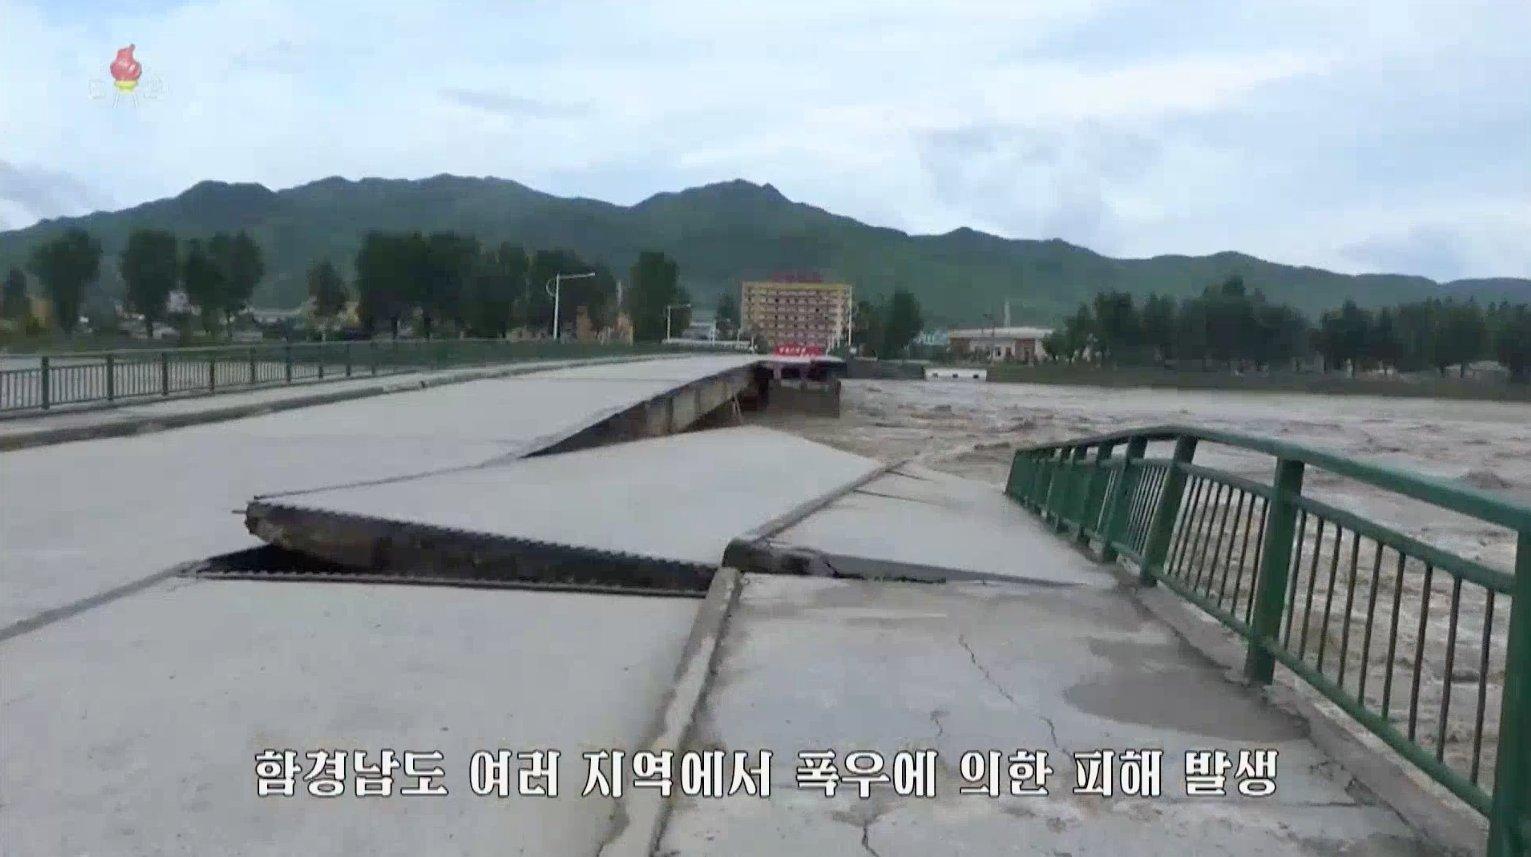 Inunda'ii ]n Coreea de Nord